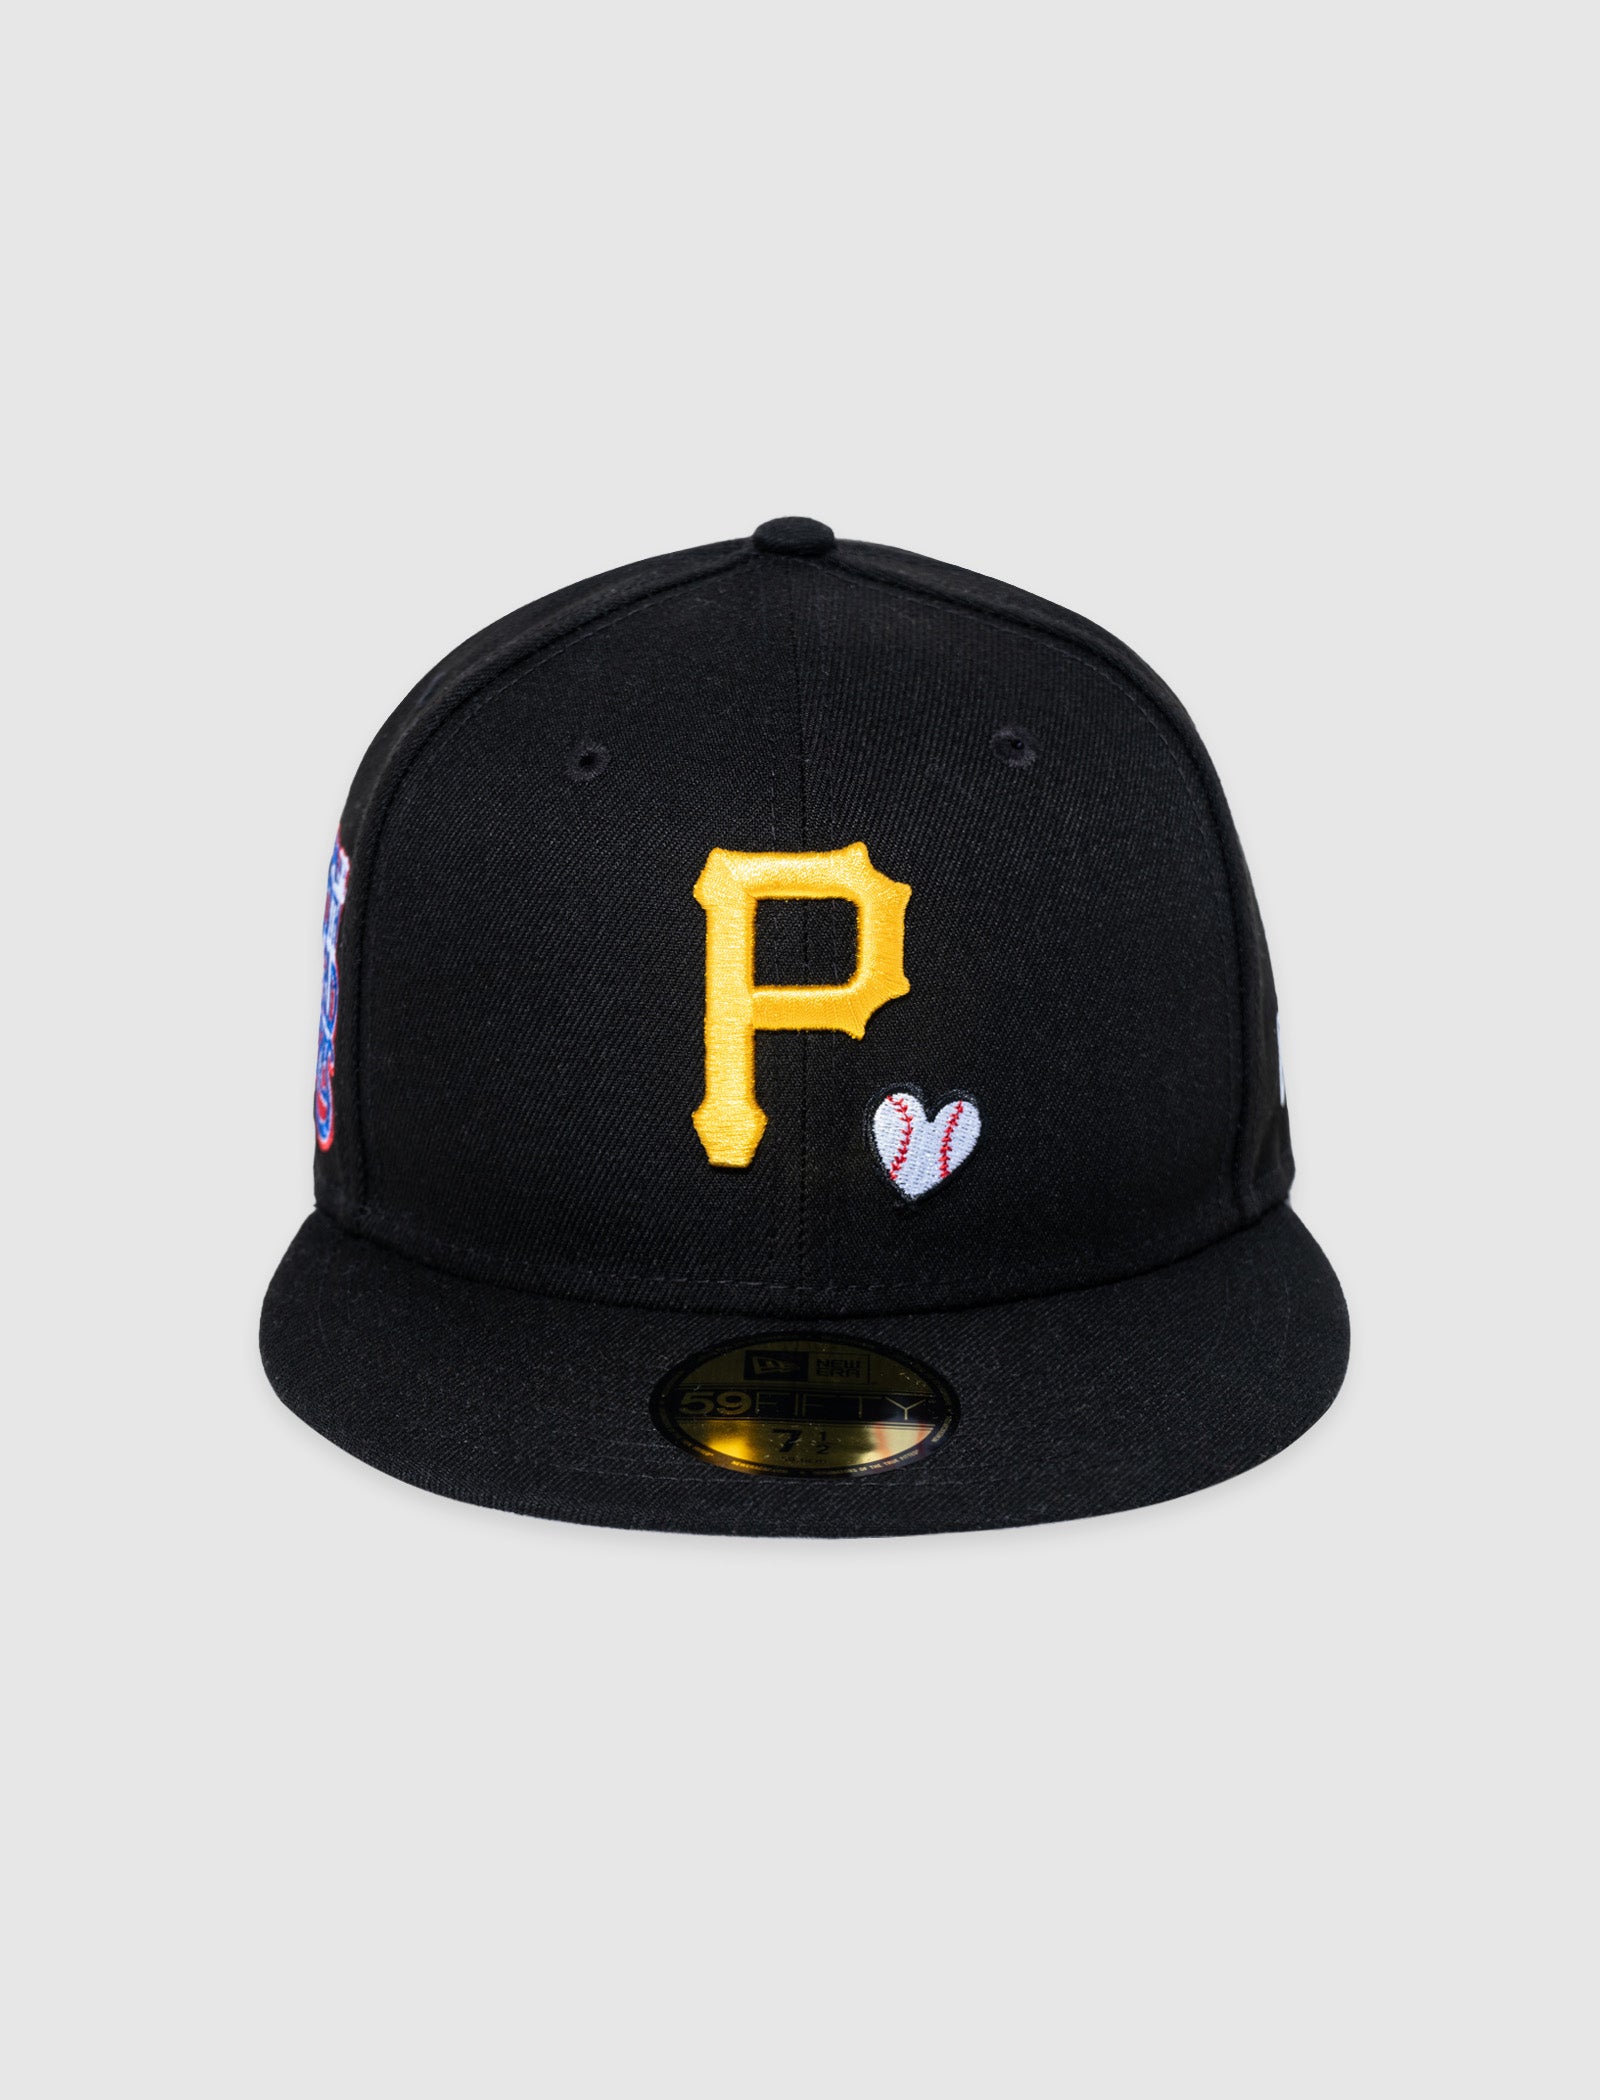 New Era Pittsburgh Pirates Hat 7 1/2